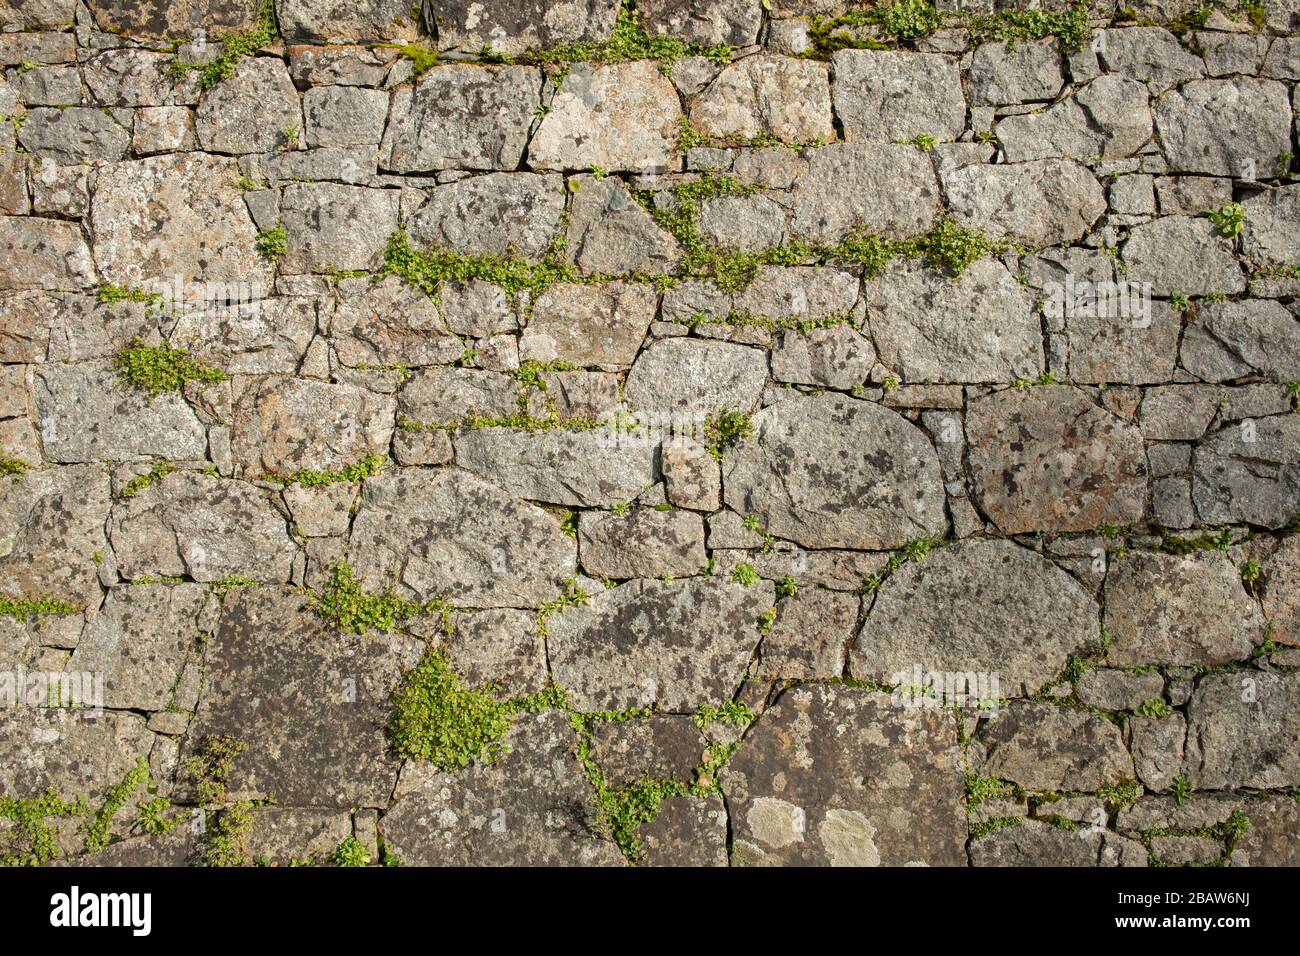 Mur naturel de granit de pierre avec des mauvaises herbes qui poussent dans les fissures, fond. Jersey, îles du canal, Banque D'Images